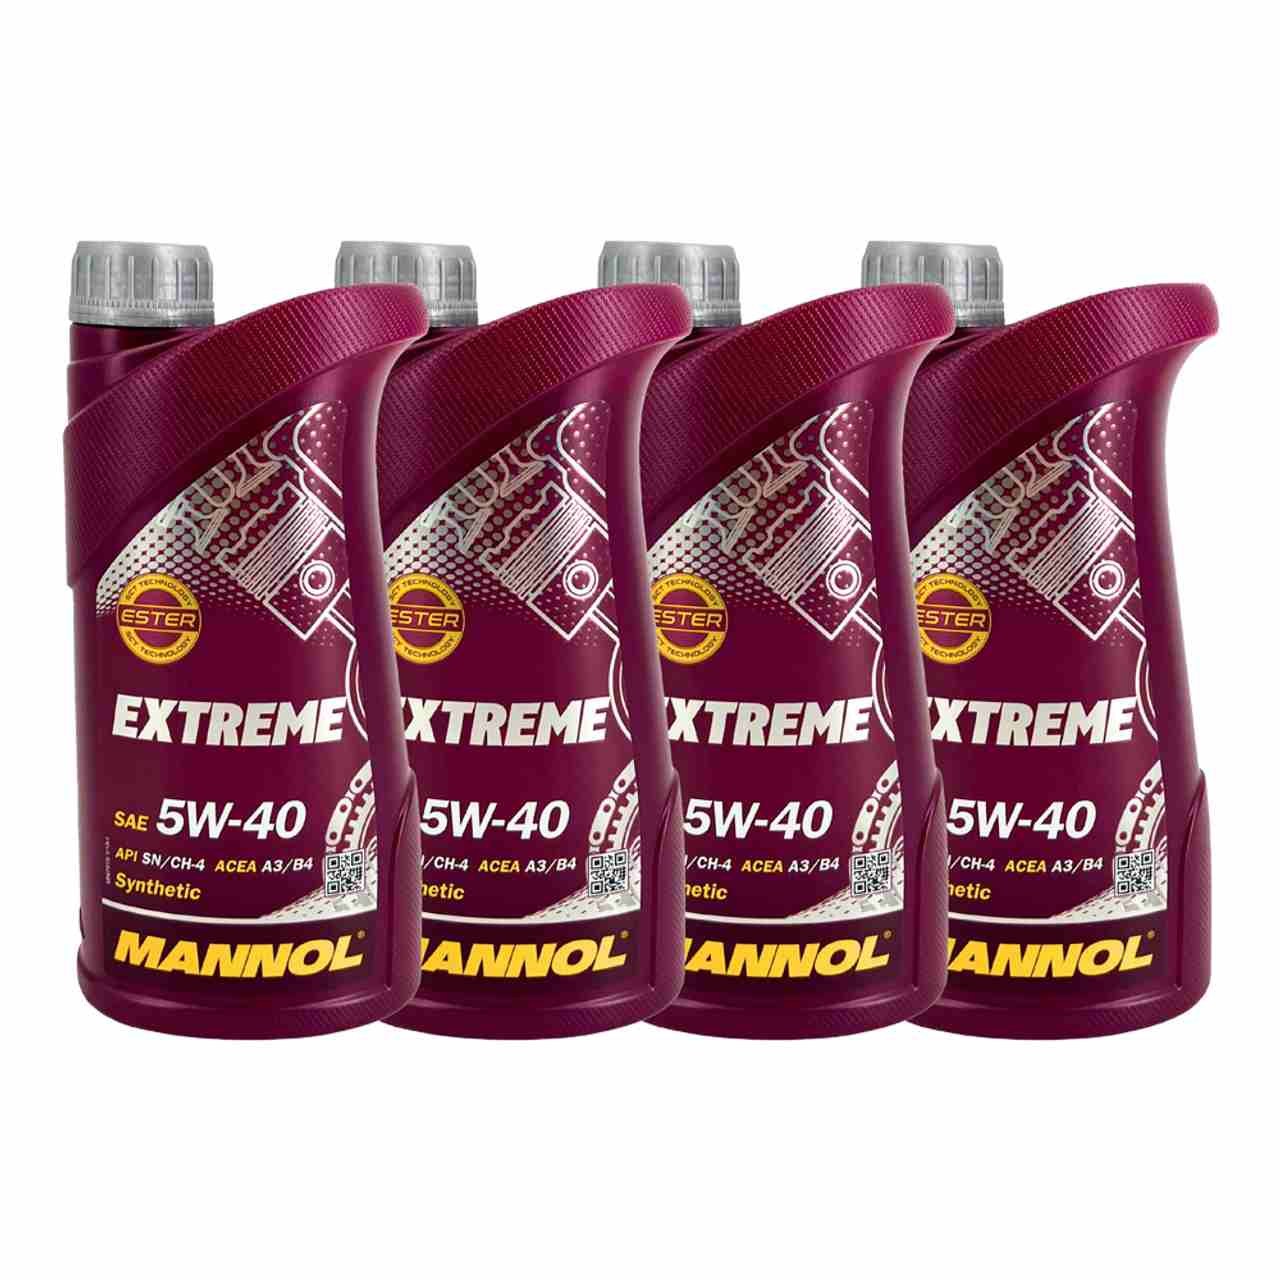 Mannol Extreme 5W-40 4x1 Liter